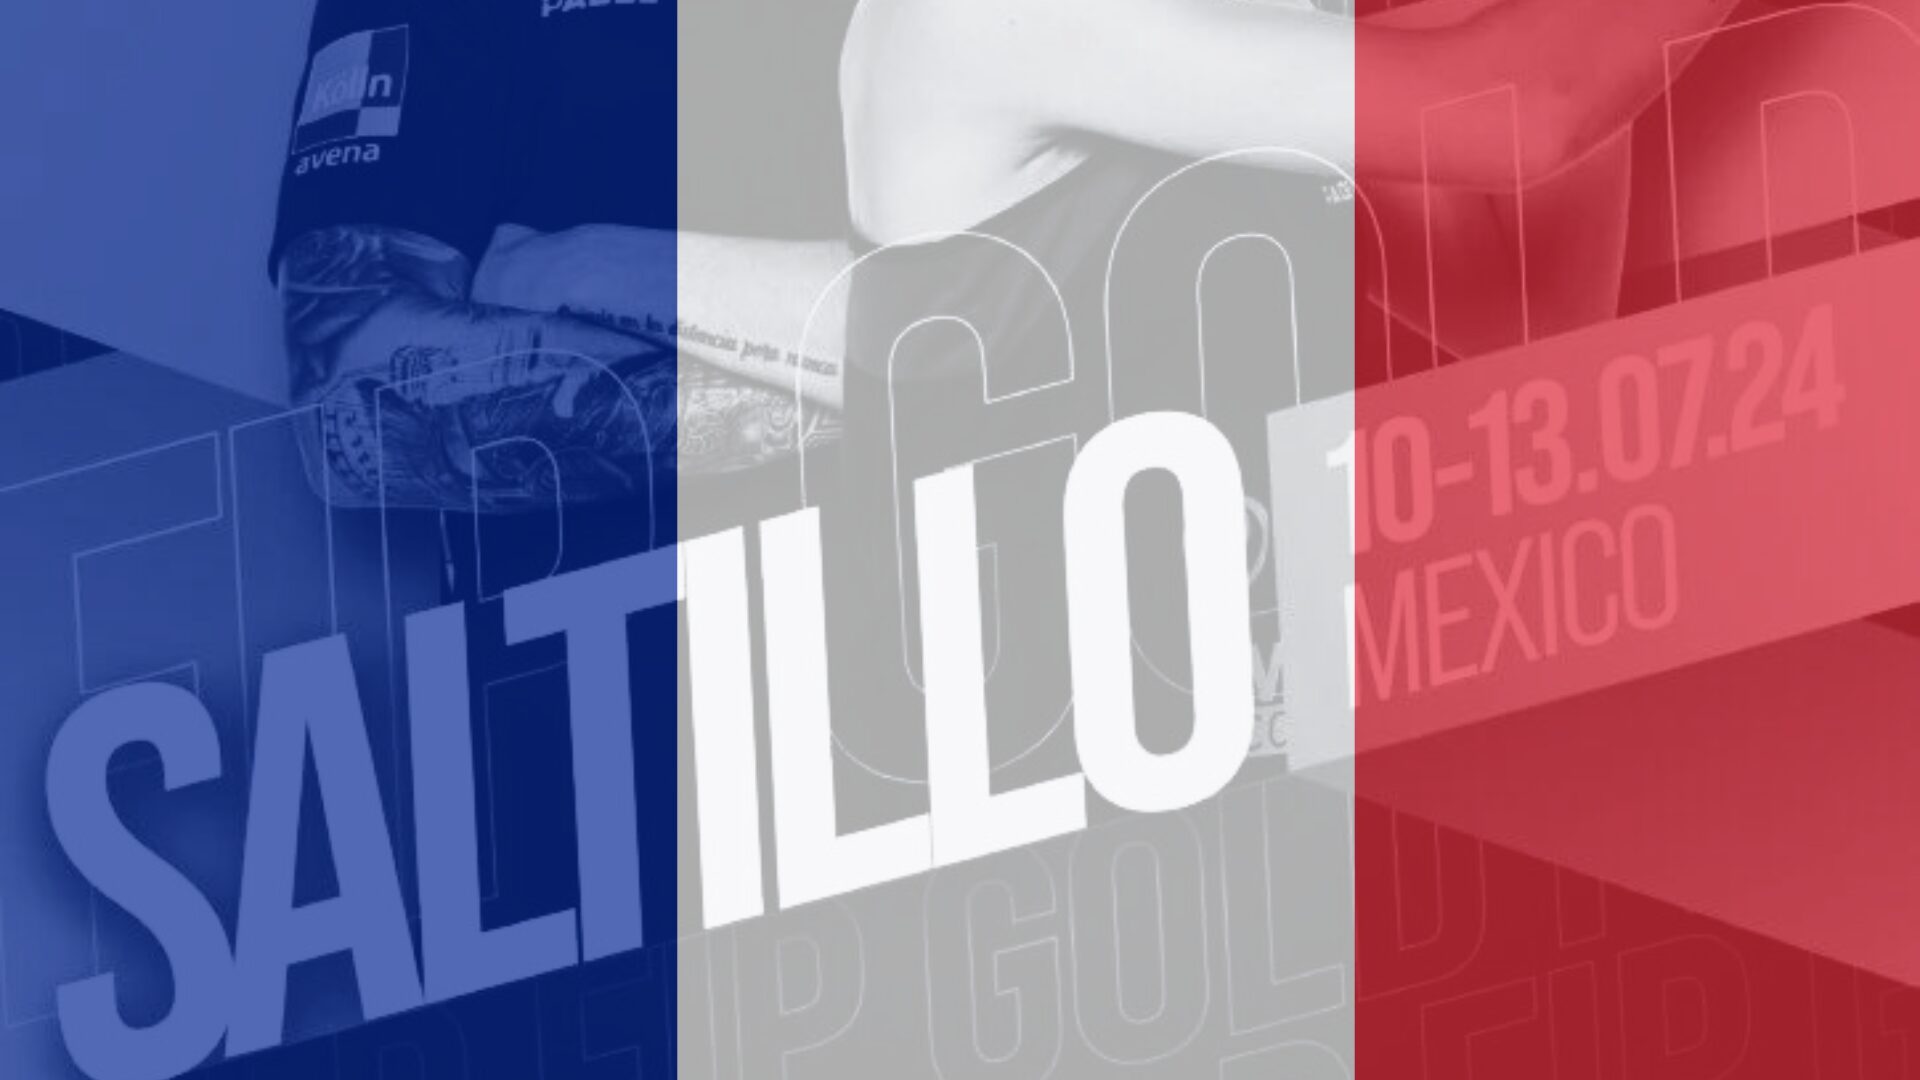 FIP Gold Saltillo – La France représentée par 4 Français au Mexique